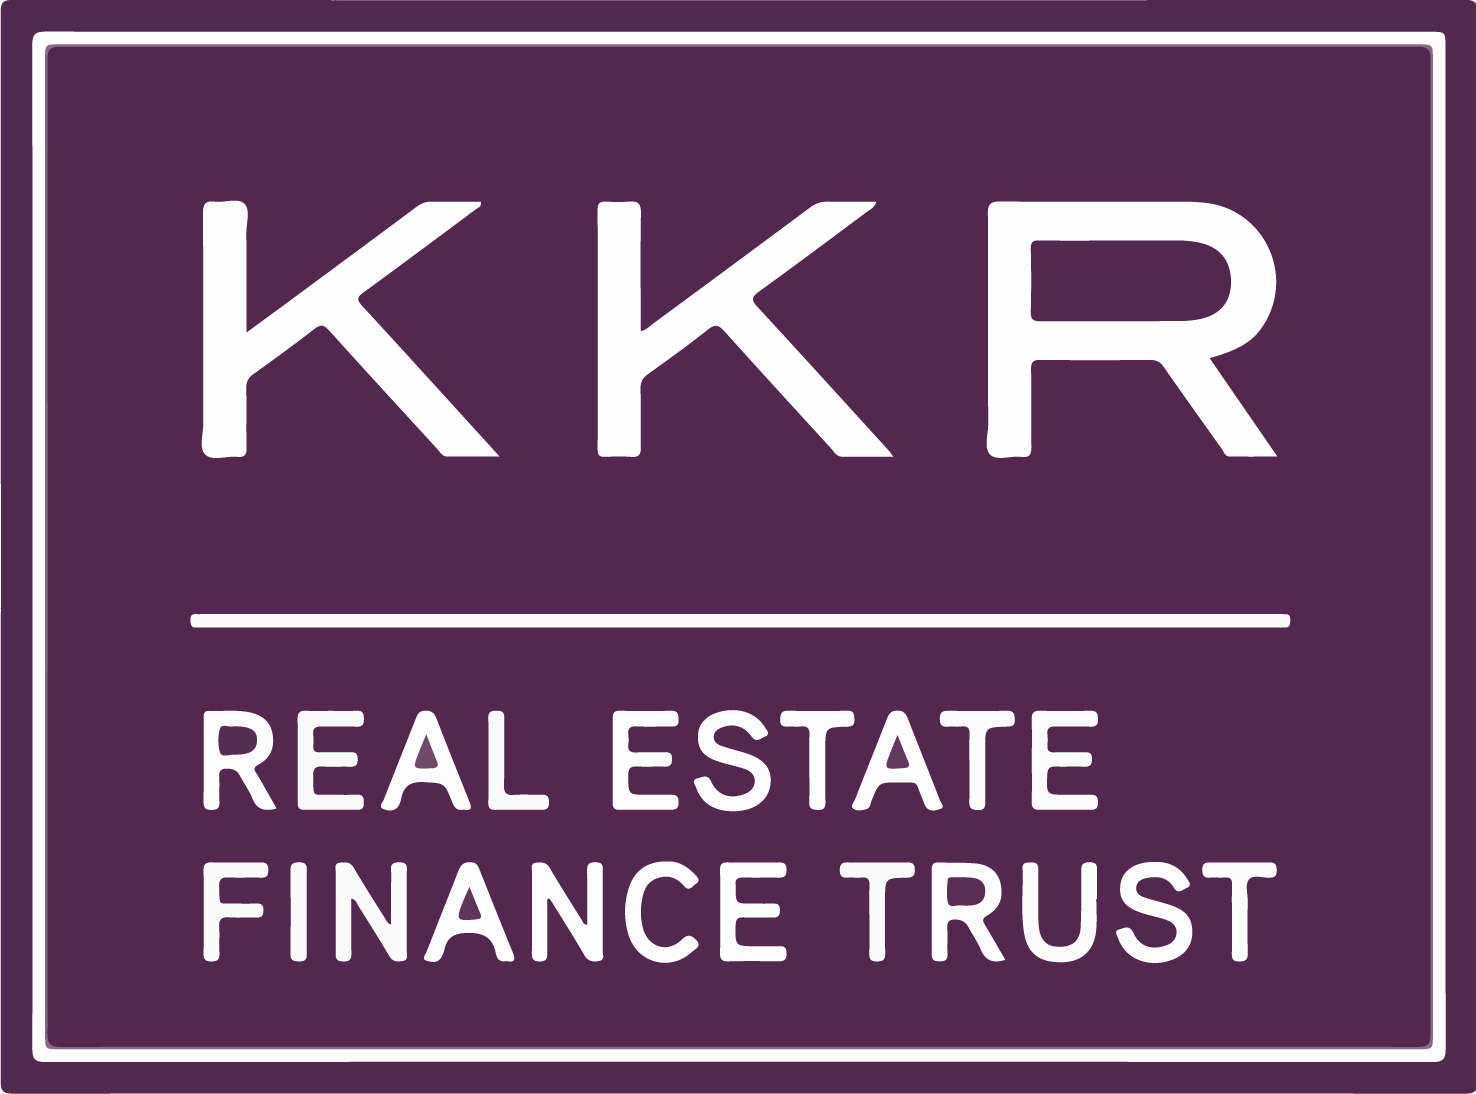 KKR Real Estate Finance Trust logo (transparent PNG)